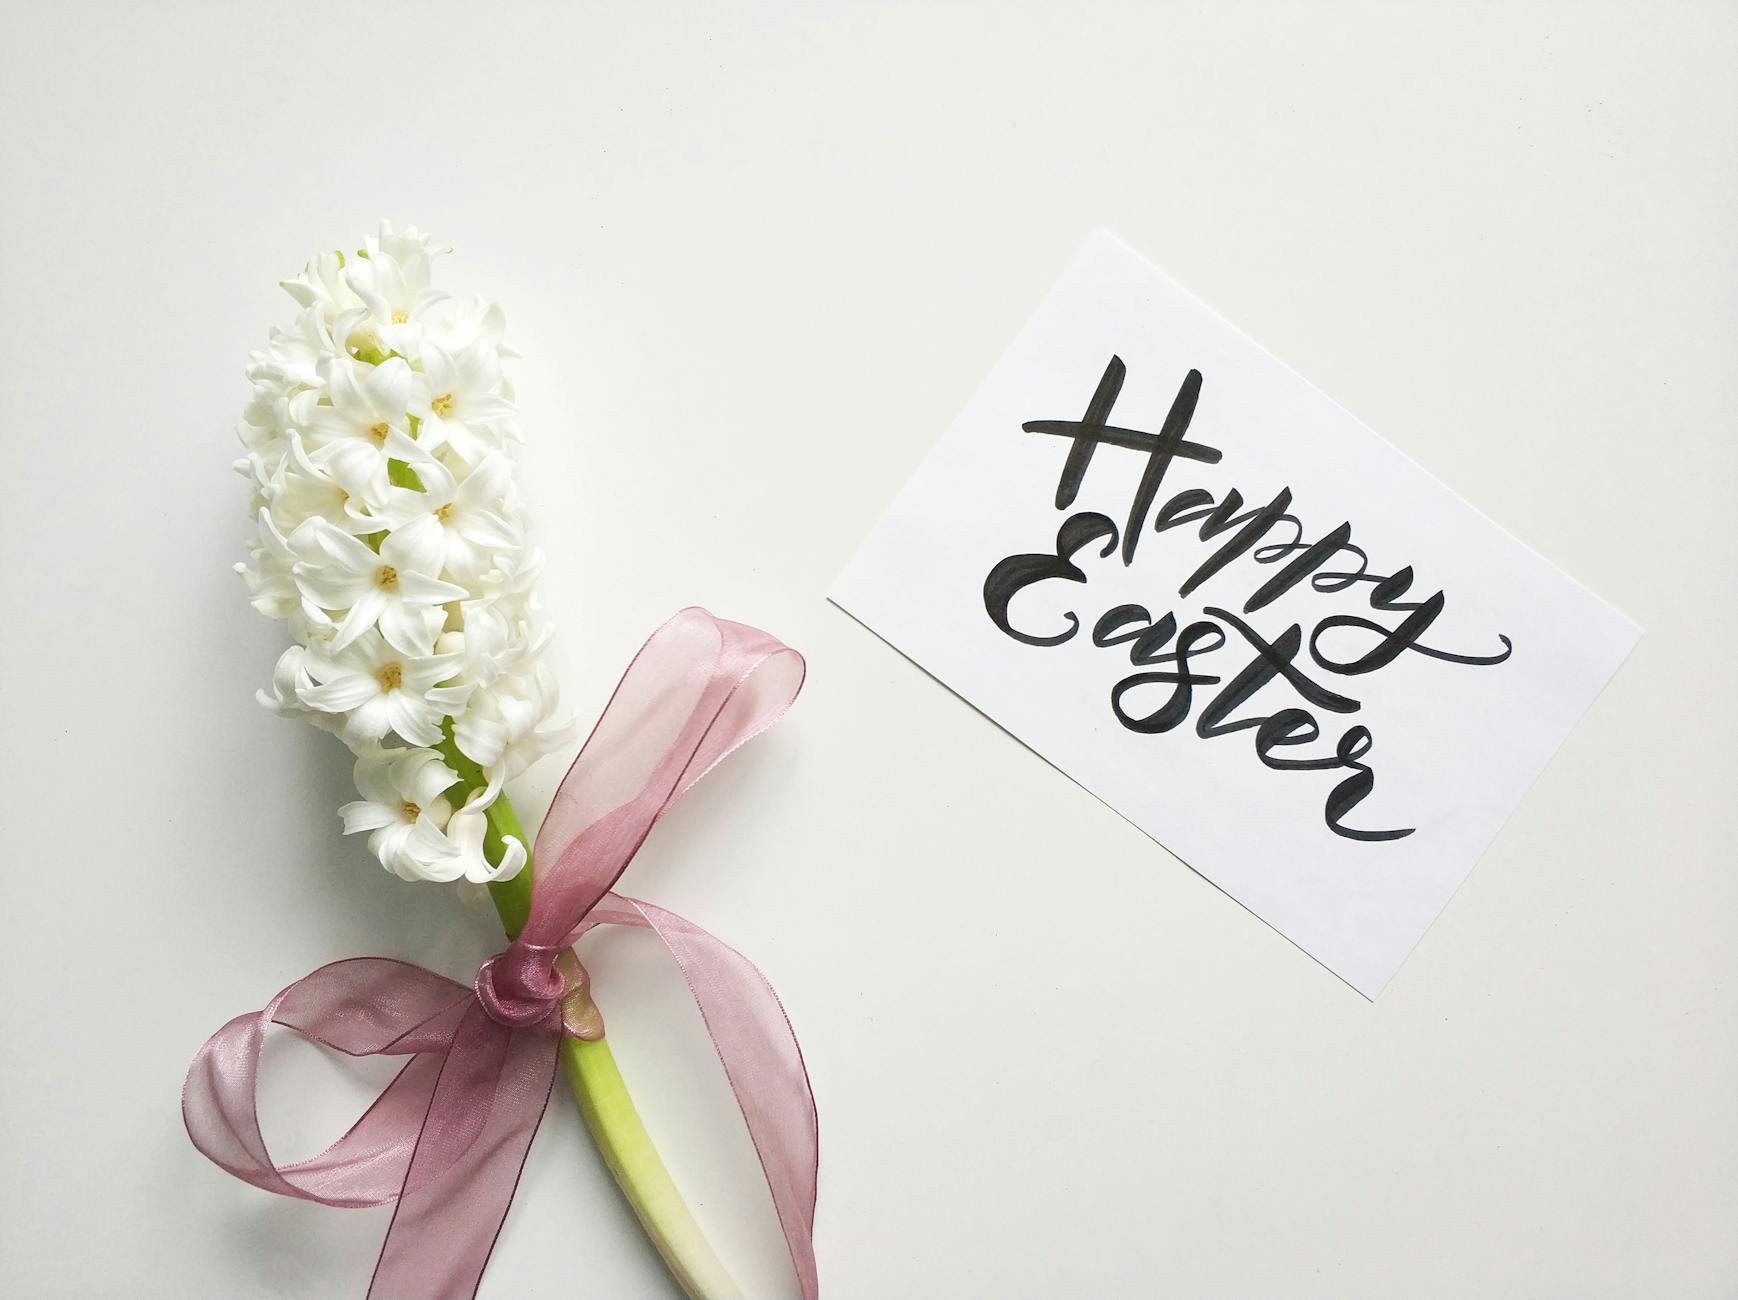 Die Bedeutung von Ostern: Auferstehung und Hoffnung